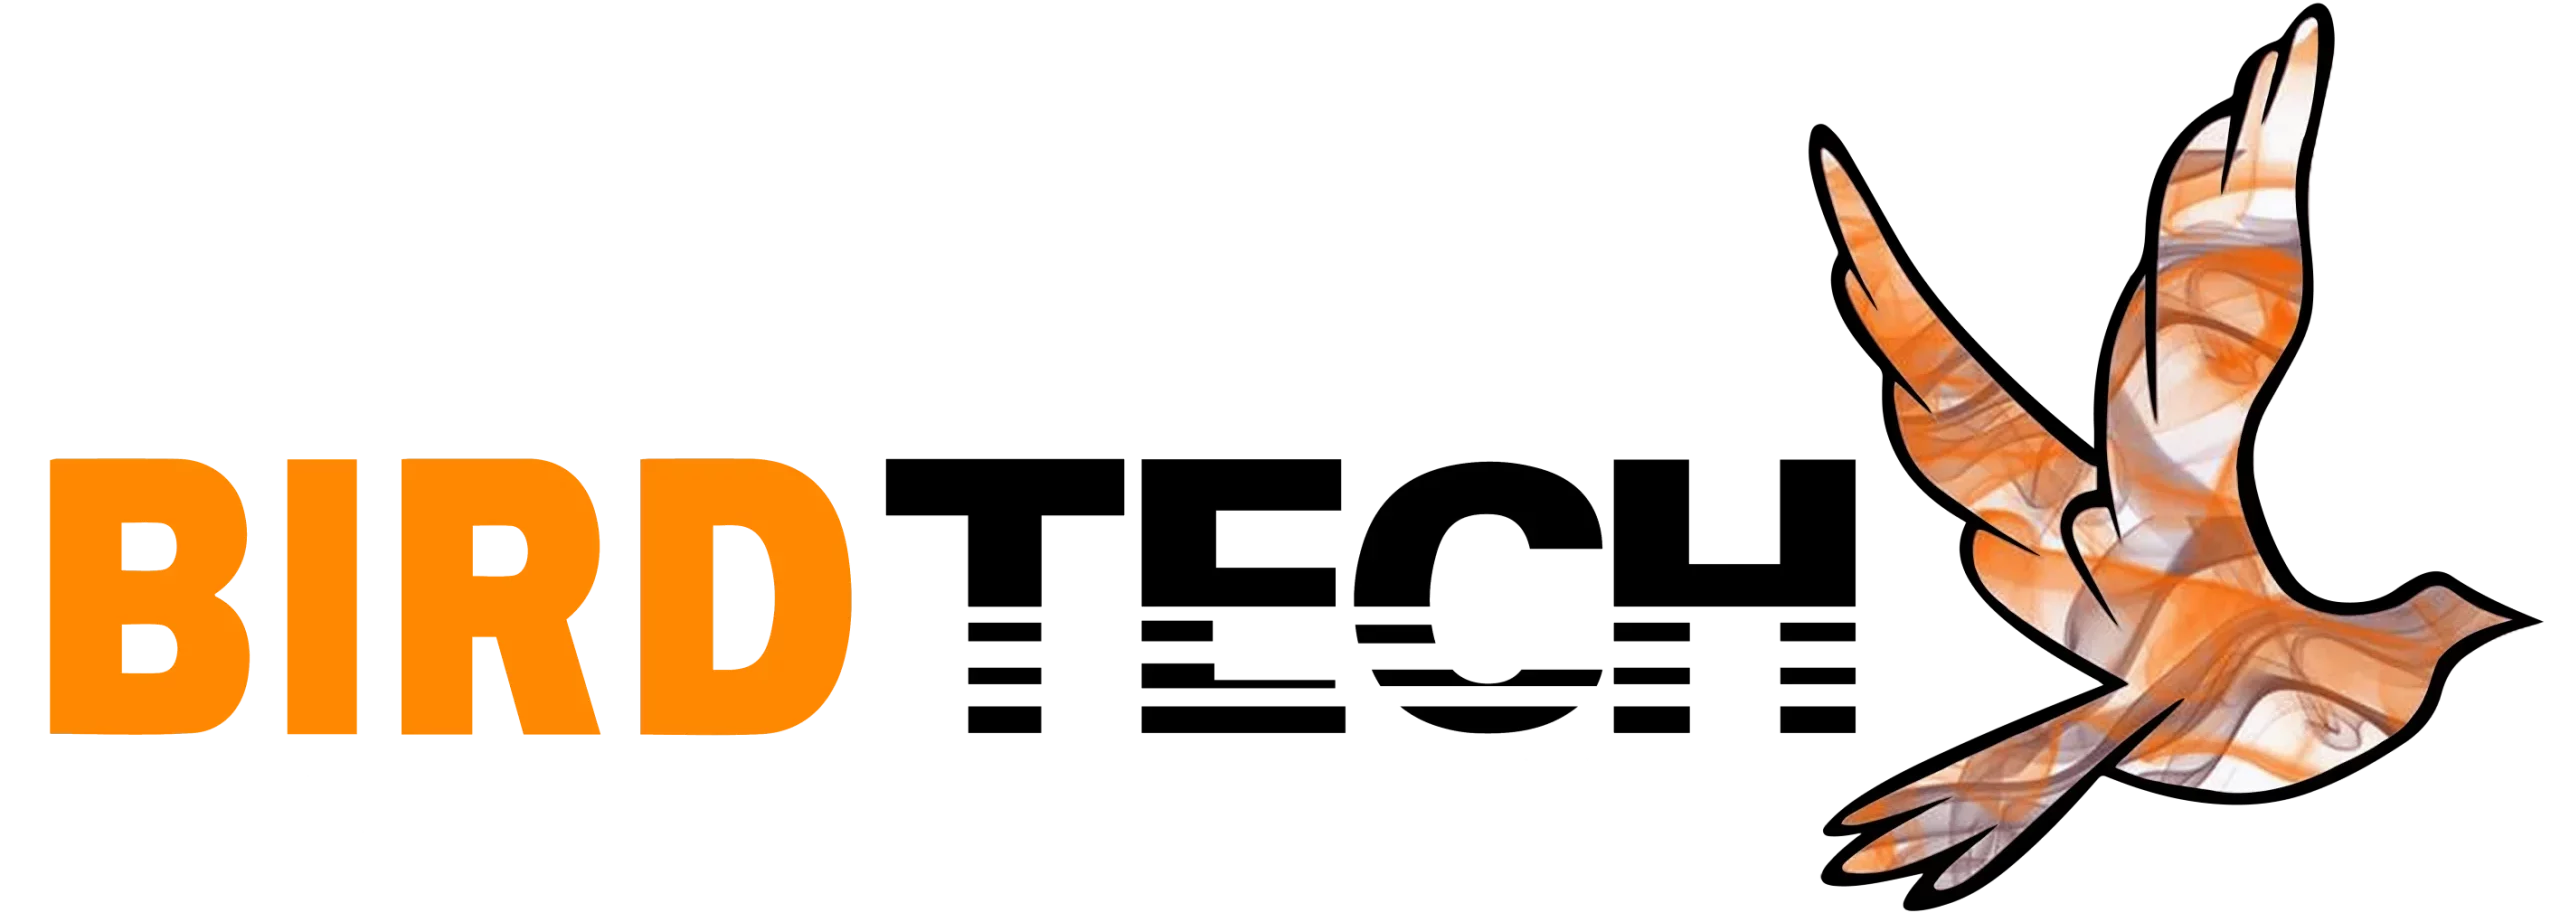 Bird Tech company logo